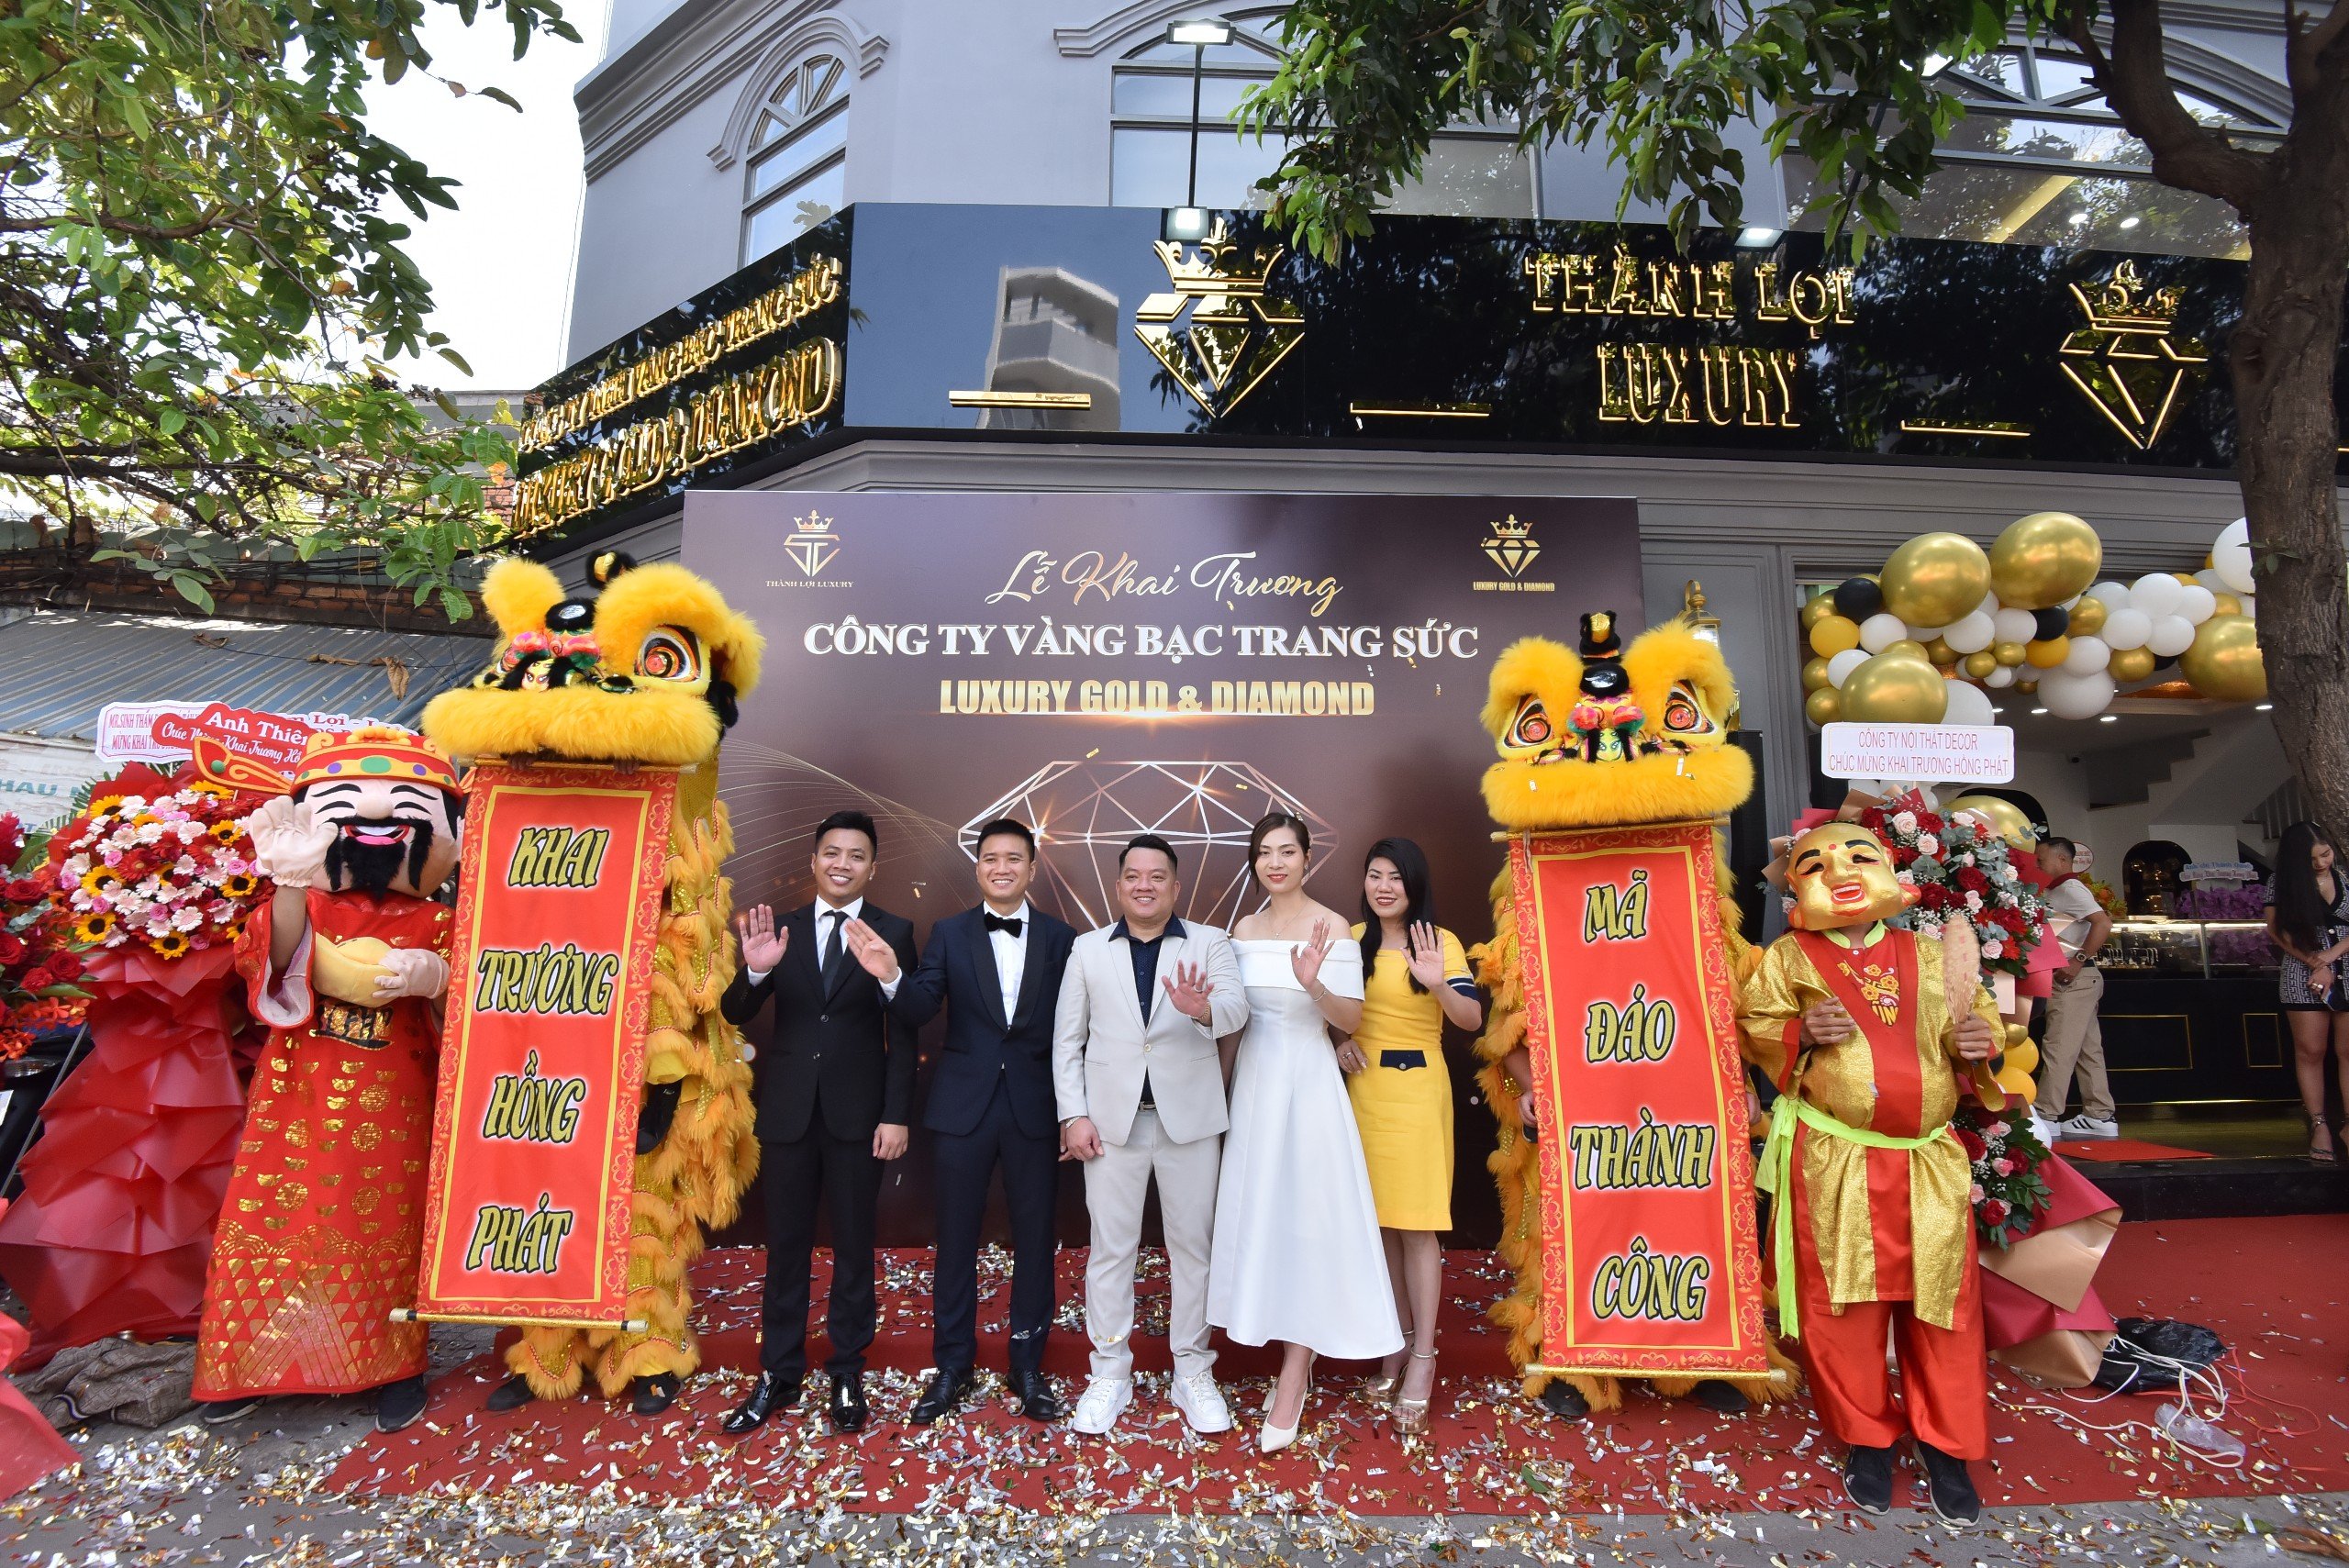 Store Vàng Bạc Trang Sức Luxury Gold & Diamond khai trương hoành tráng tại Sài Gòn 